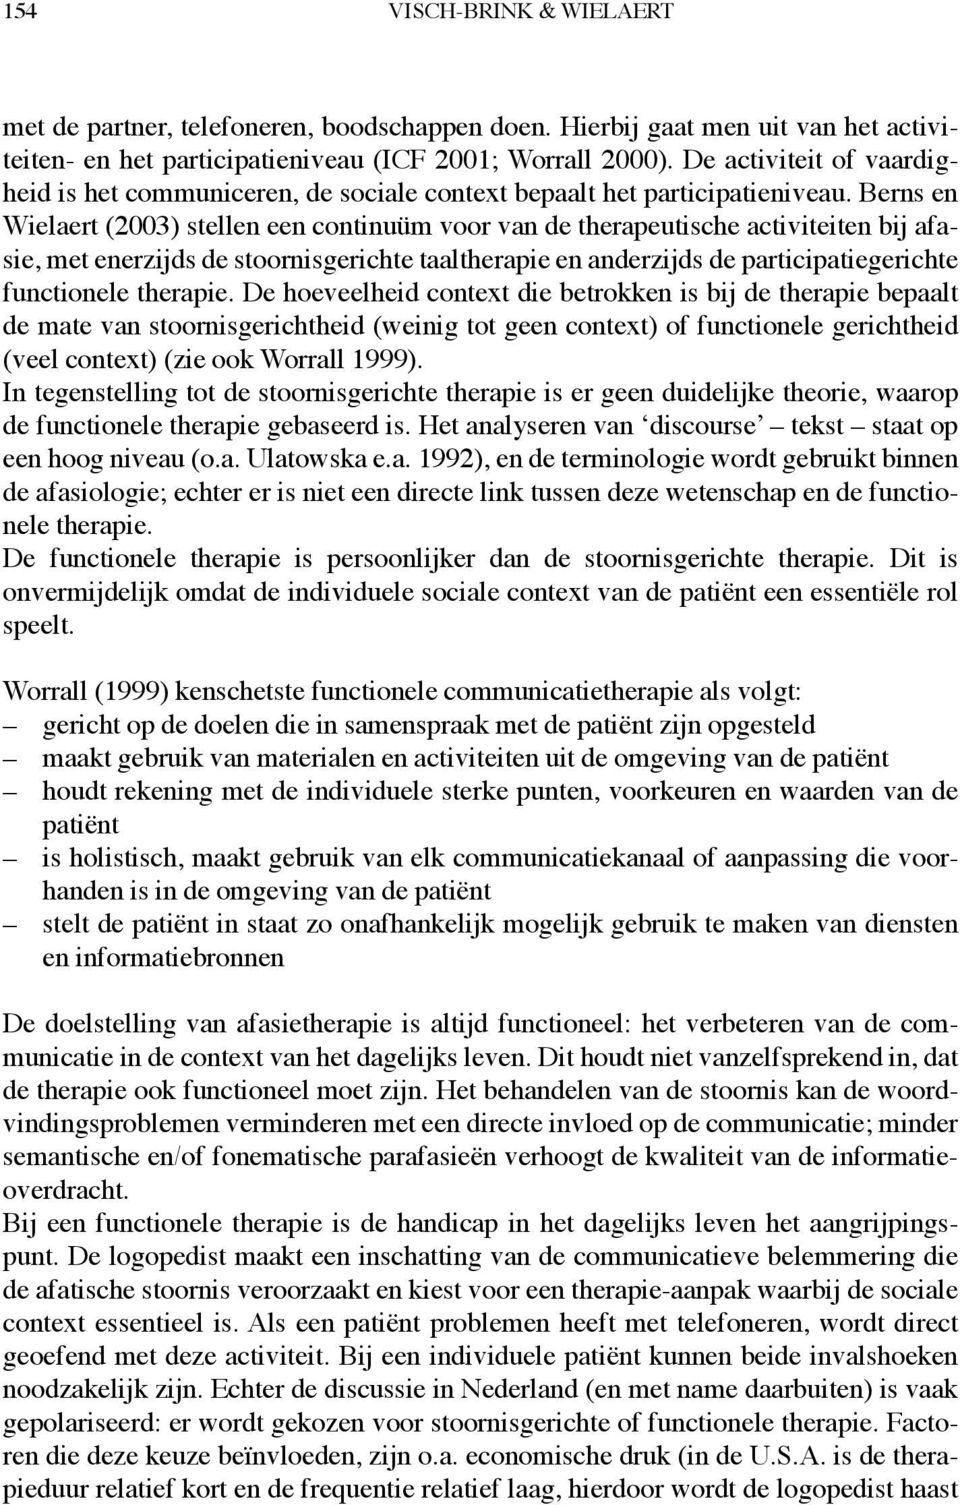 Berns en Wielaert (2003) stellen een continuüm voor van de therapeutische activiteiten bij afasie, met enerzijds de stoornisgerichte taaltherapie en anderzijds de participatiegerichte functionele